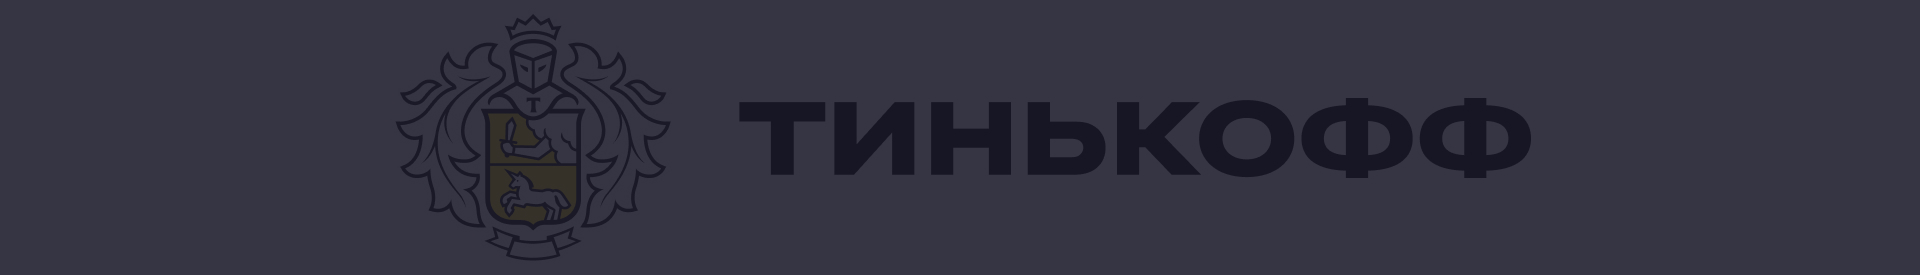 Акции и спецпредложения в банке Тинькофф в Красноярске